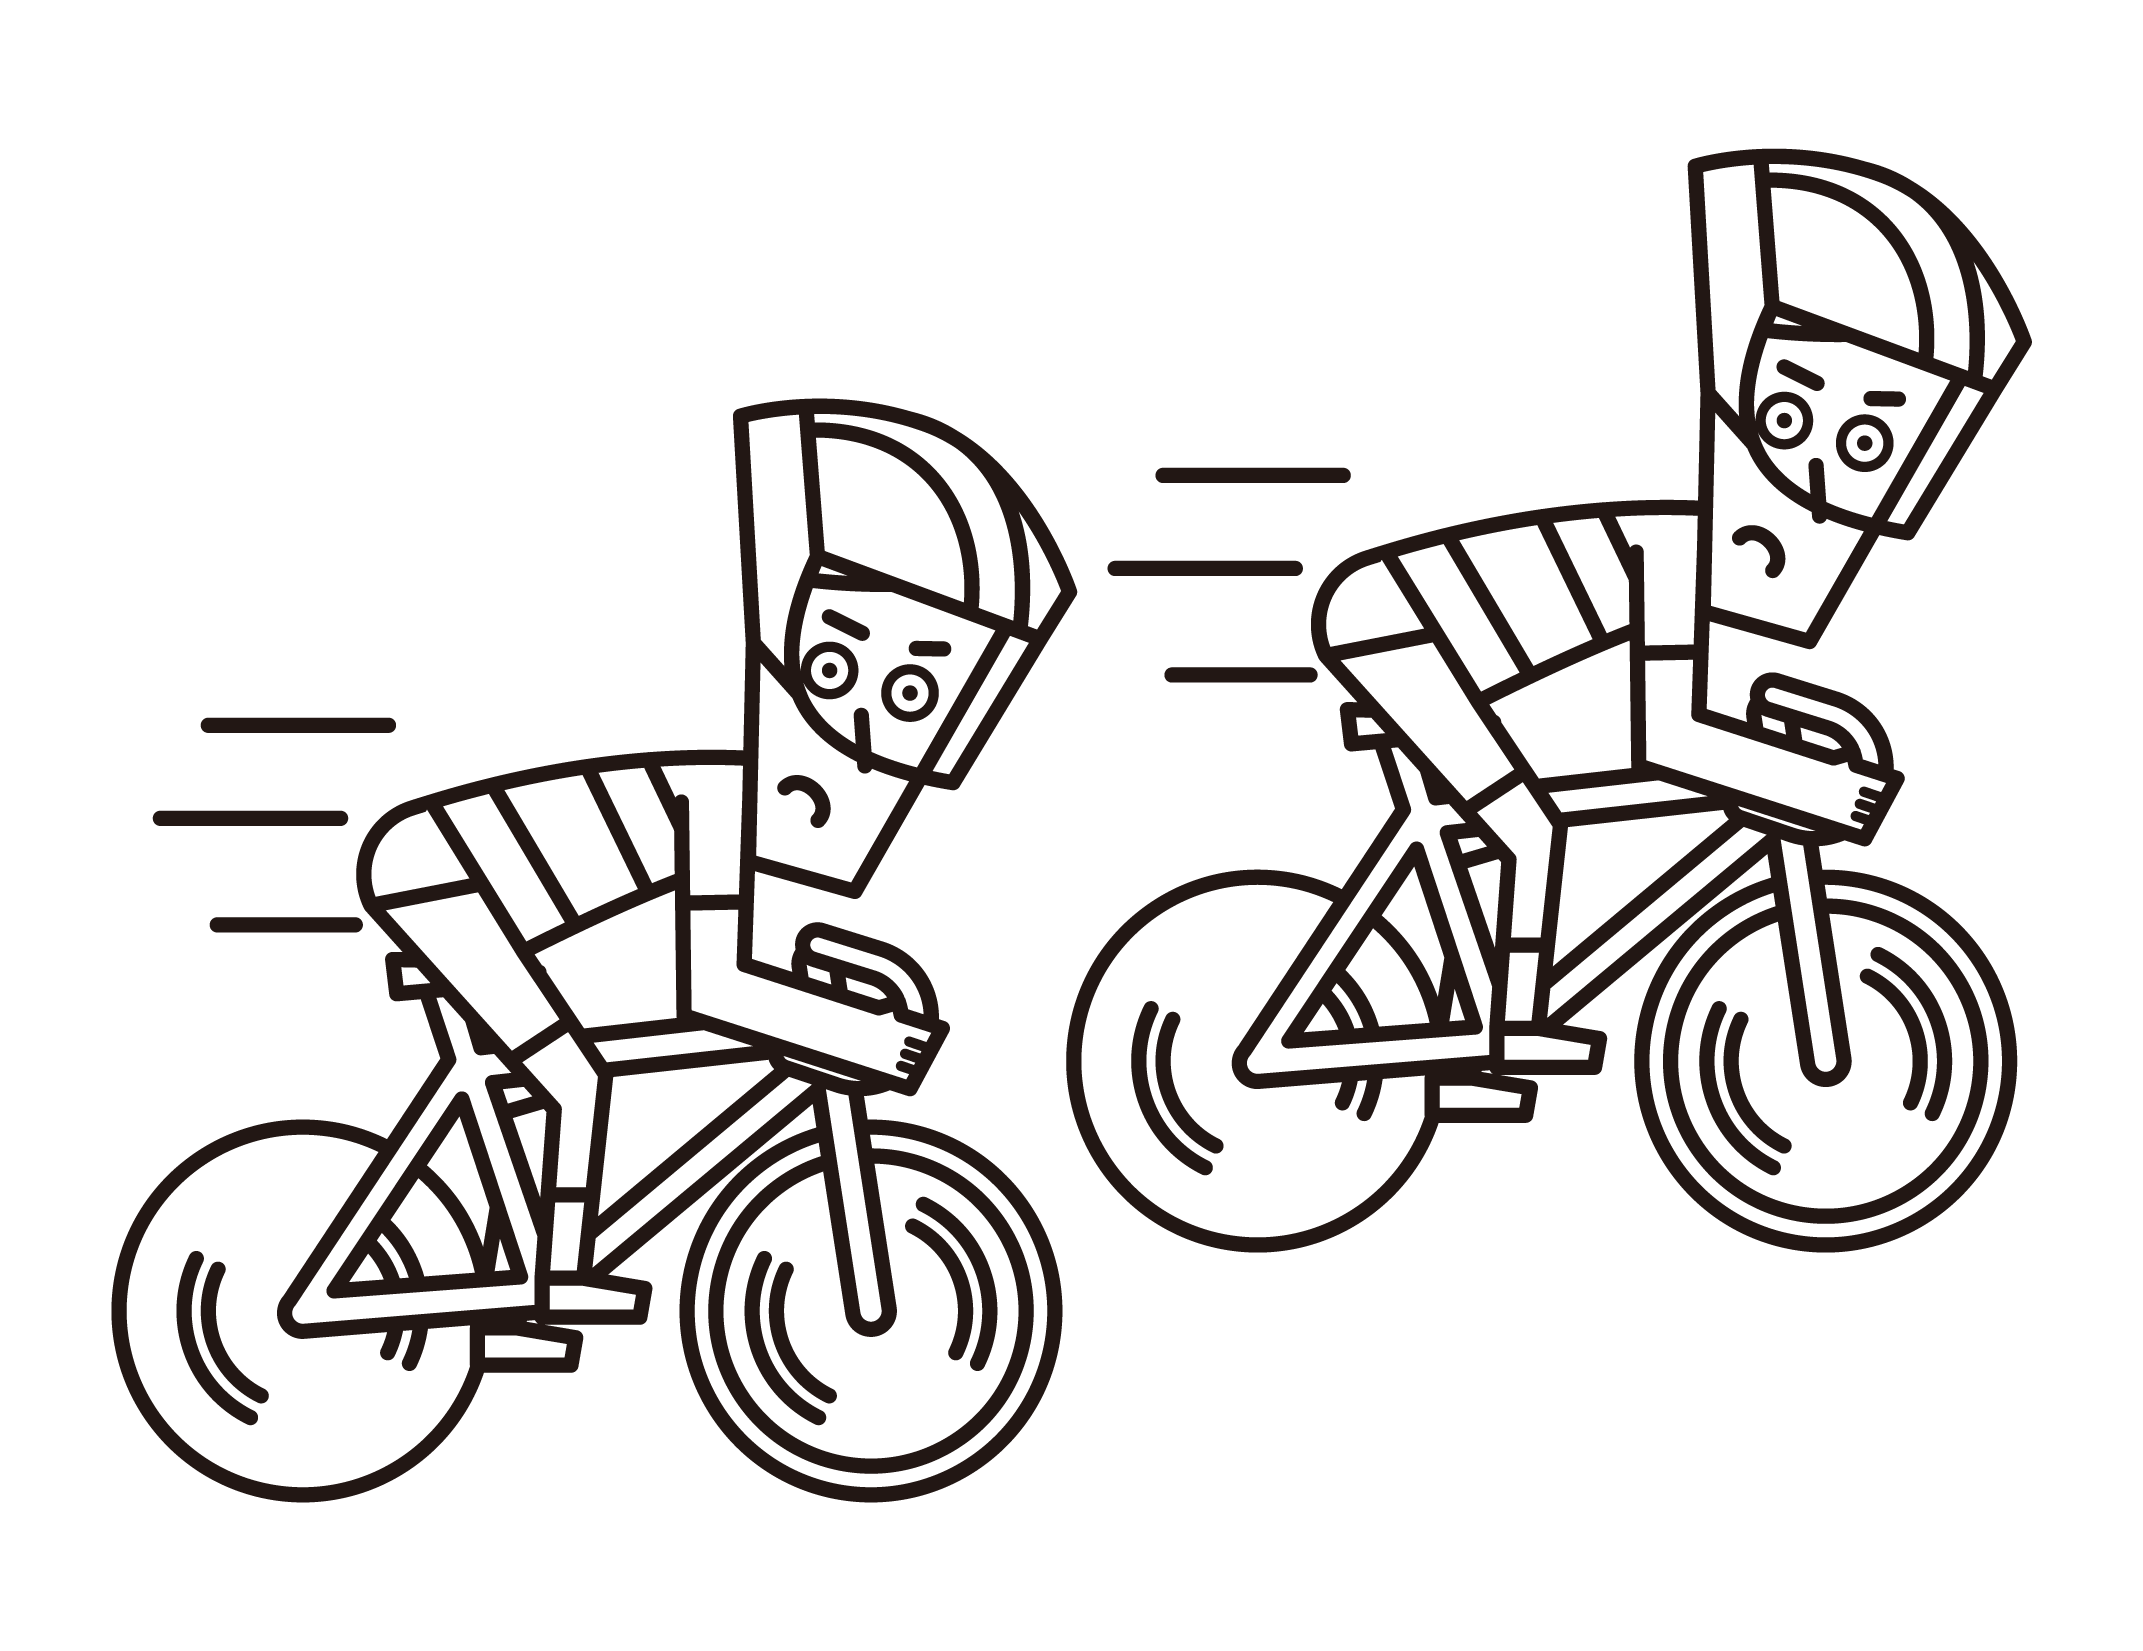 競走するスプリンター（自転車トラック競技の男性選手）のイラスト